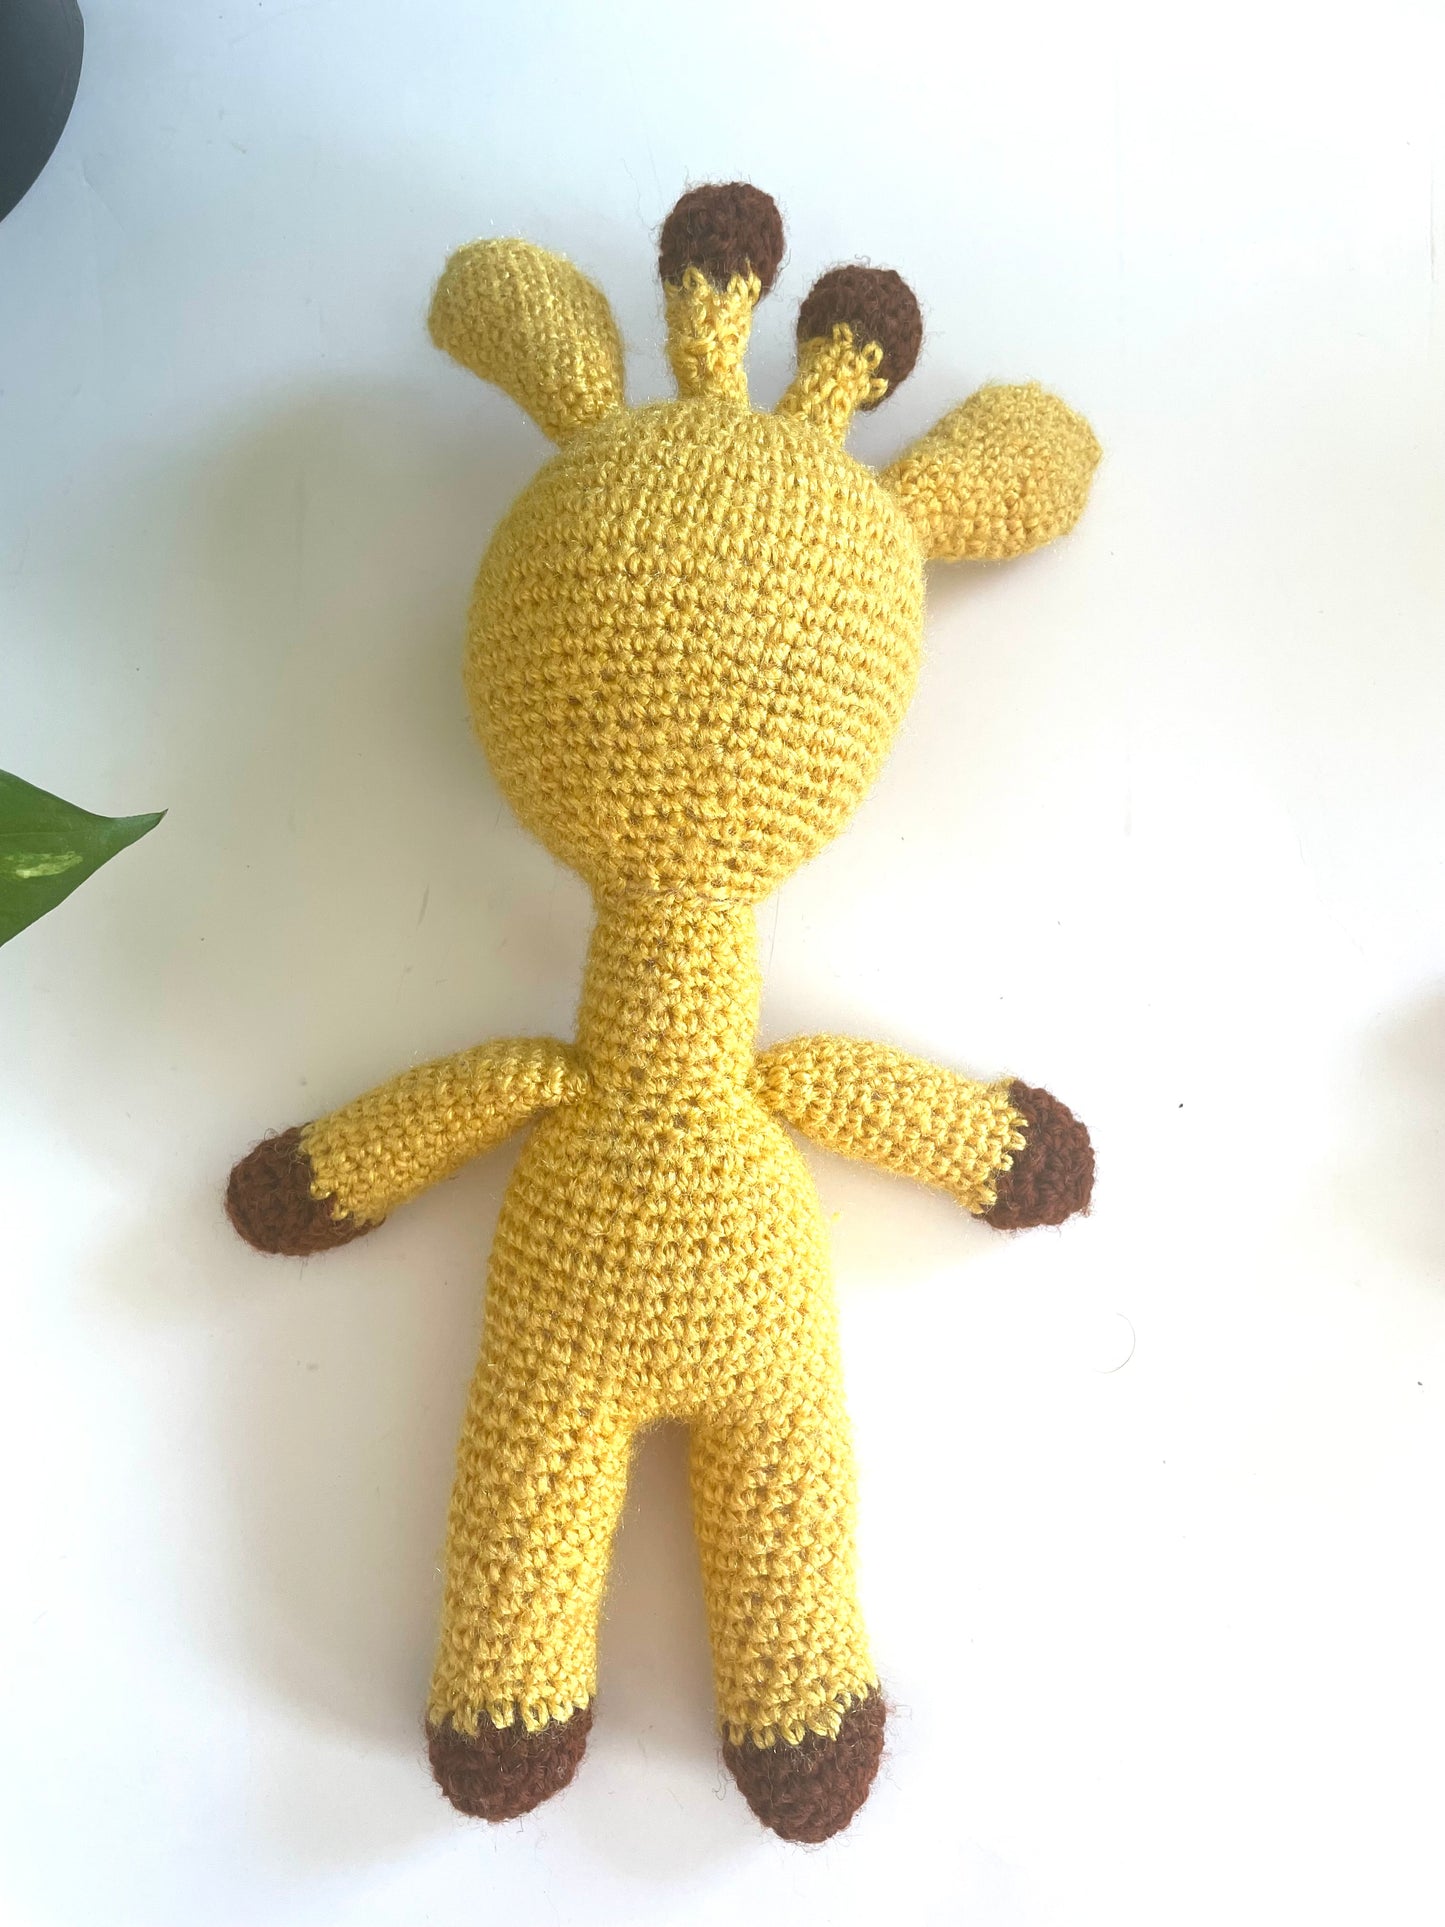 Hand knitted Giraffe